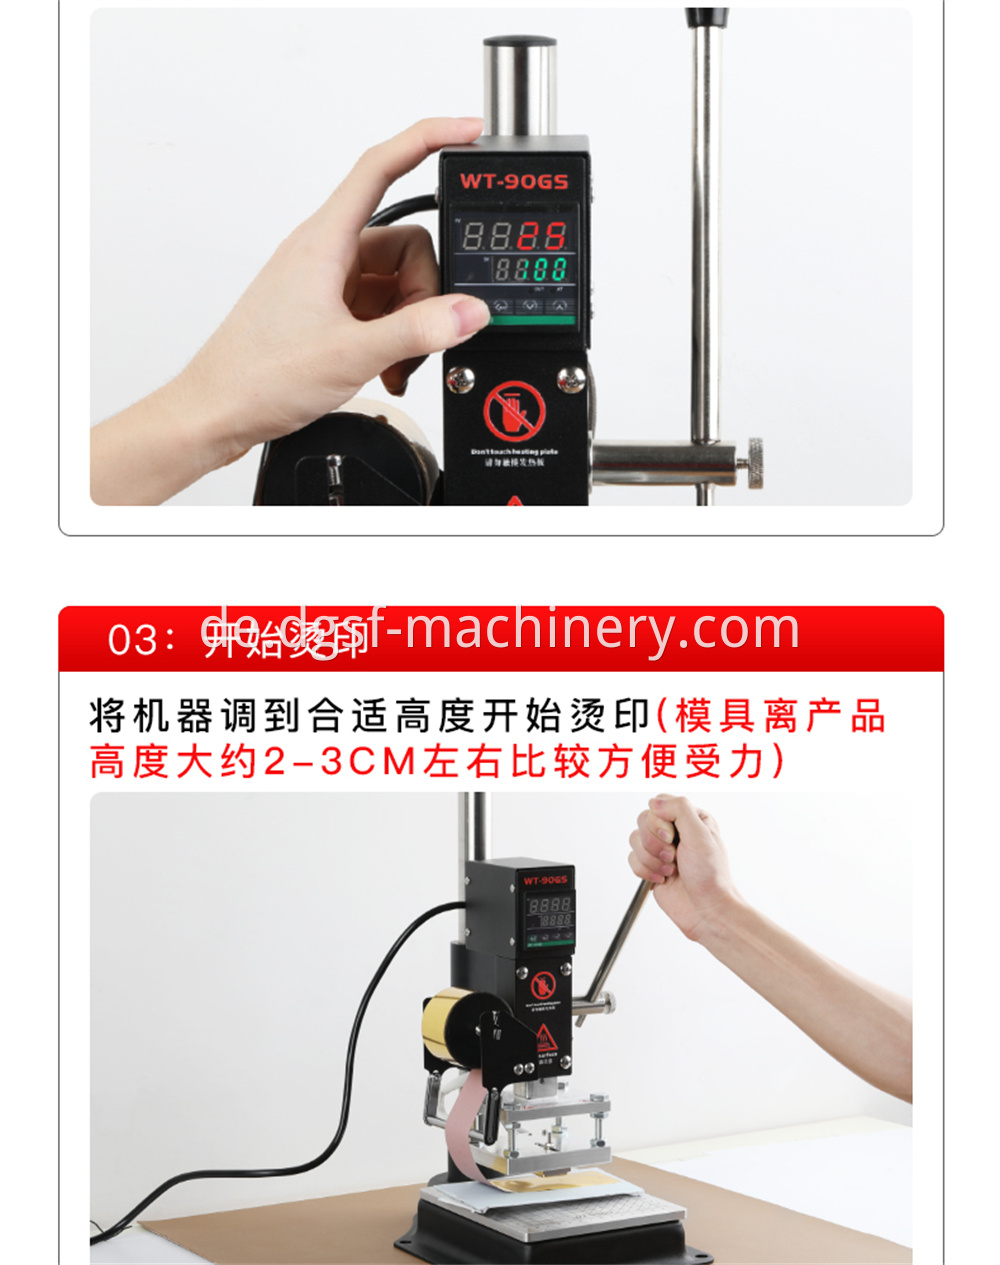 Manual Hot Stamping Machine 6 Jpg